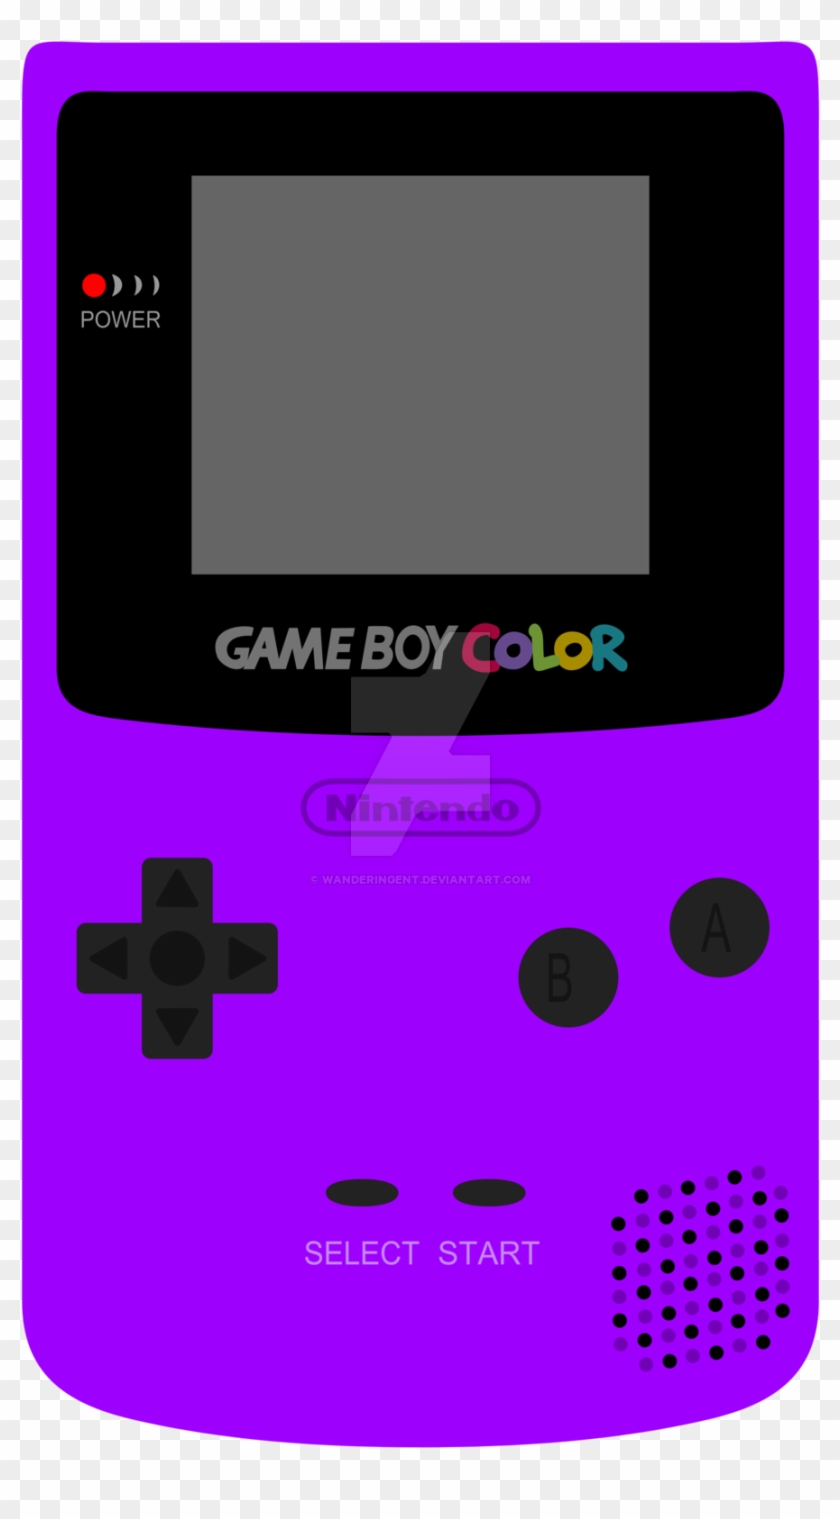 Wanderingent S Deviantart Gallery - Game Boy Color #1666246